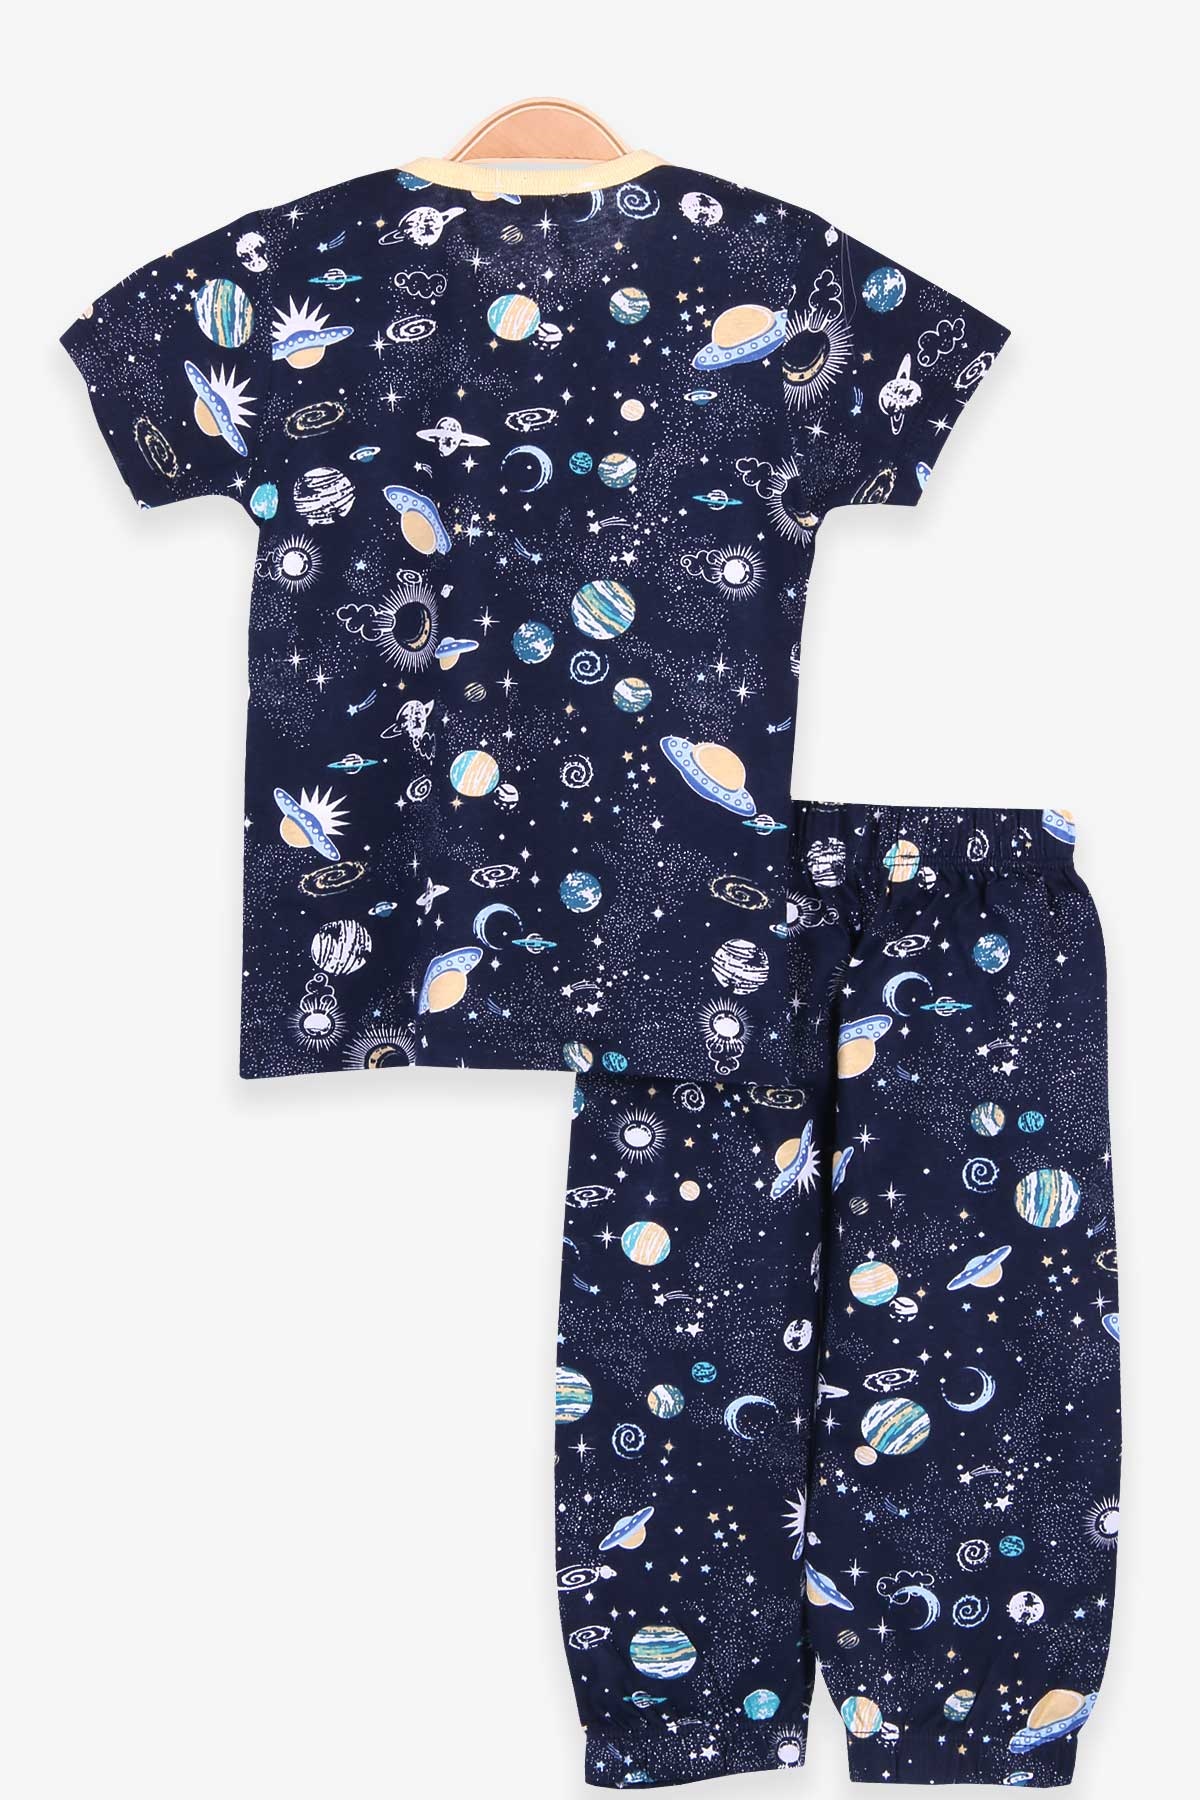 Erkek Bebek Pijama Takımı Uzay Temalı Lacivert 9 Ay - Yumuşak Kumaş | Breeze